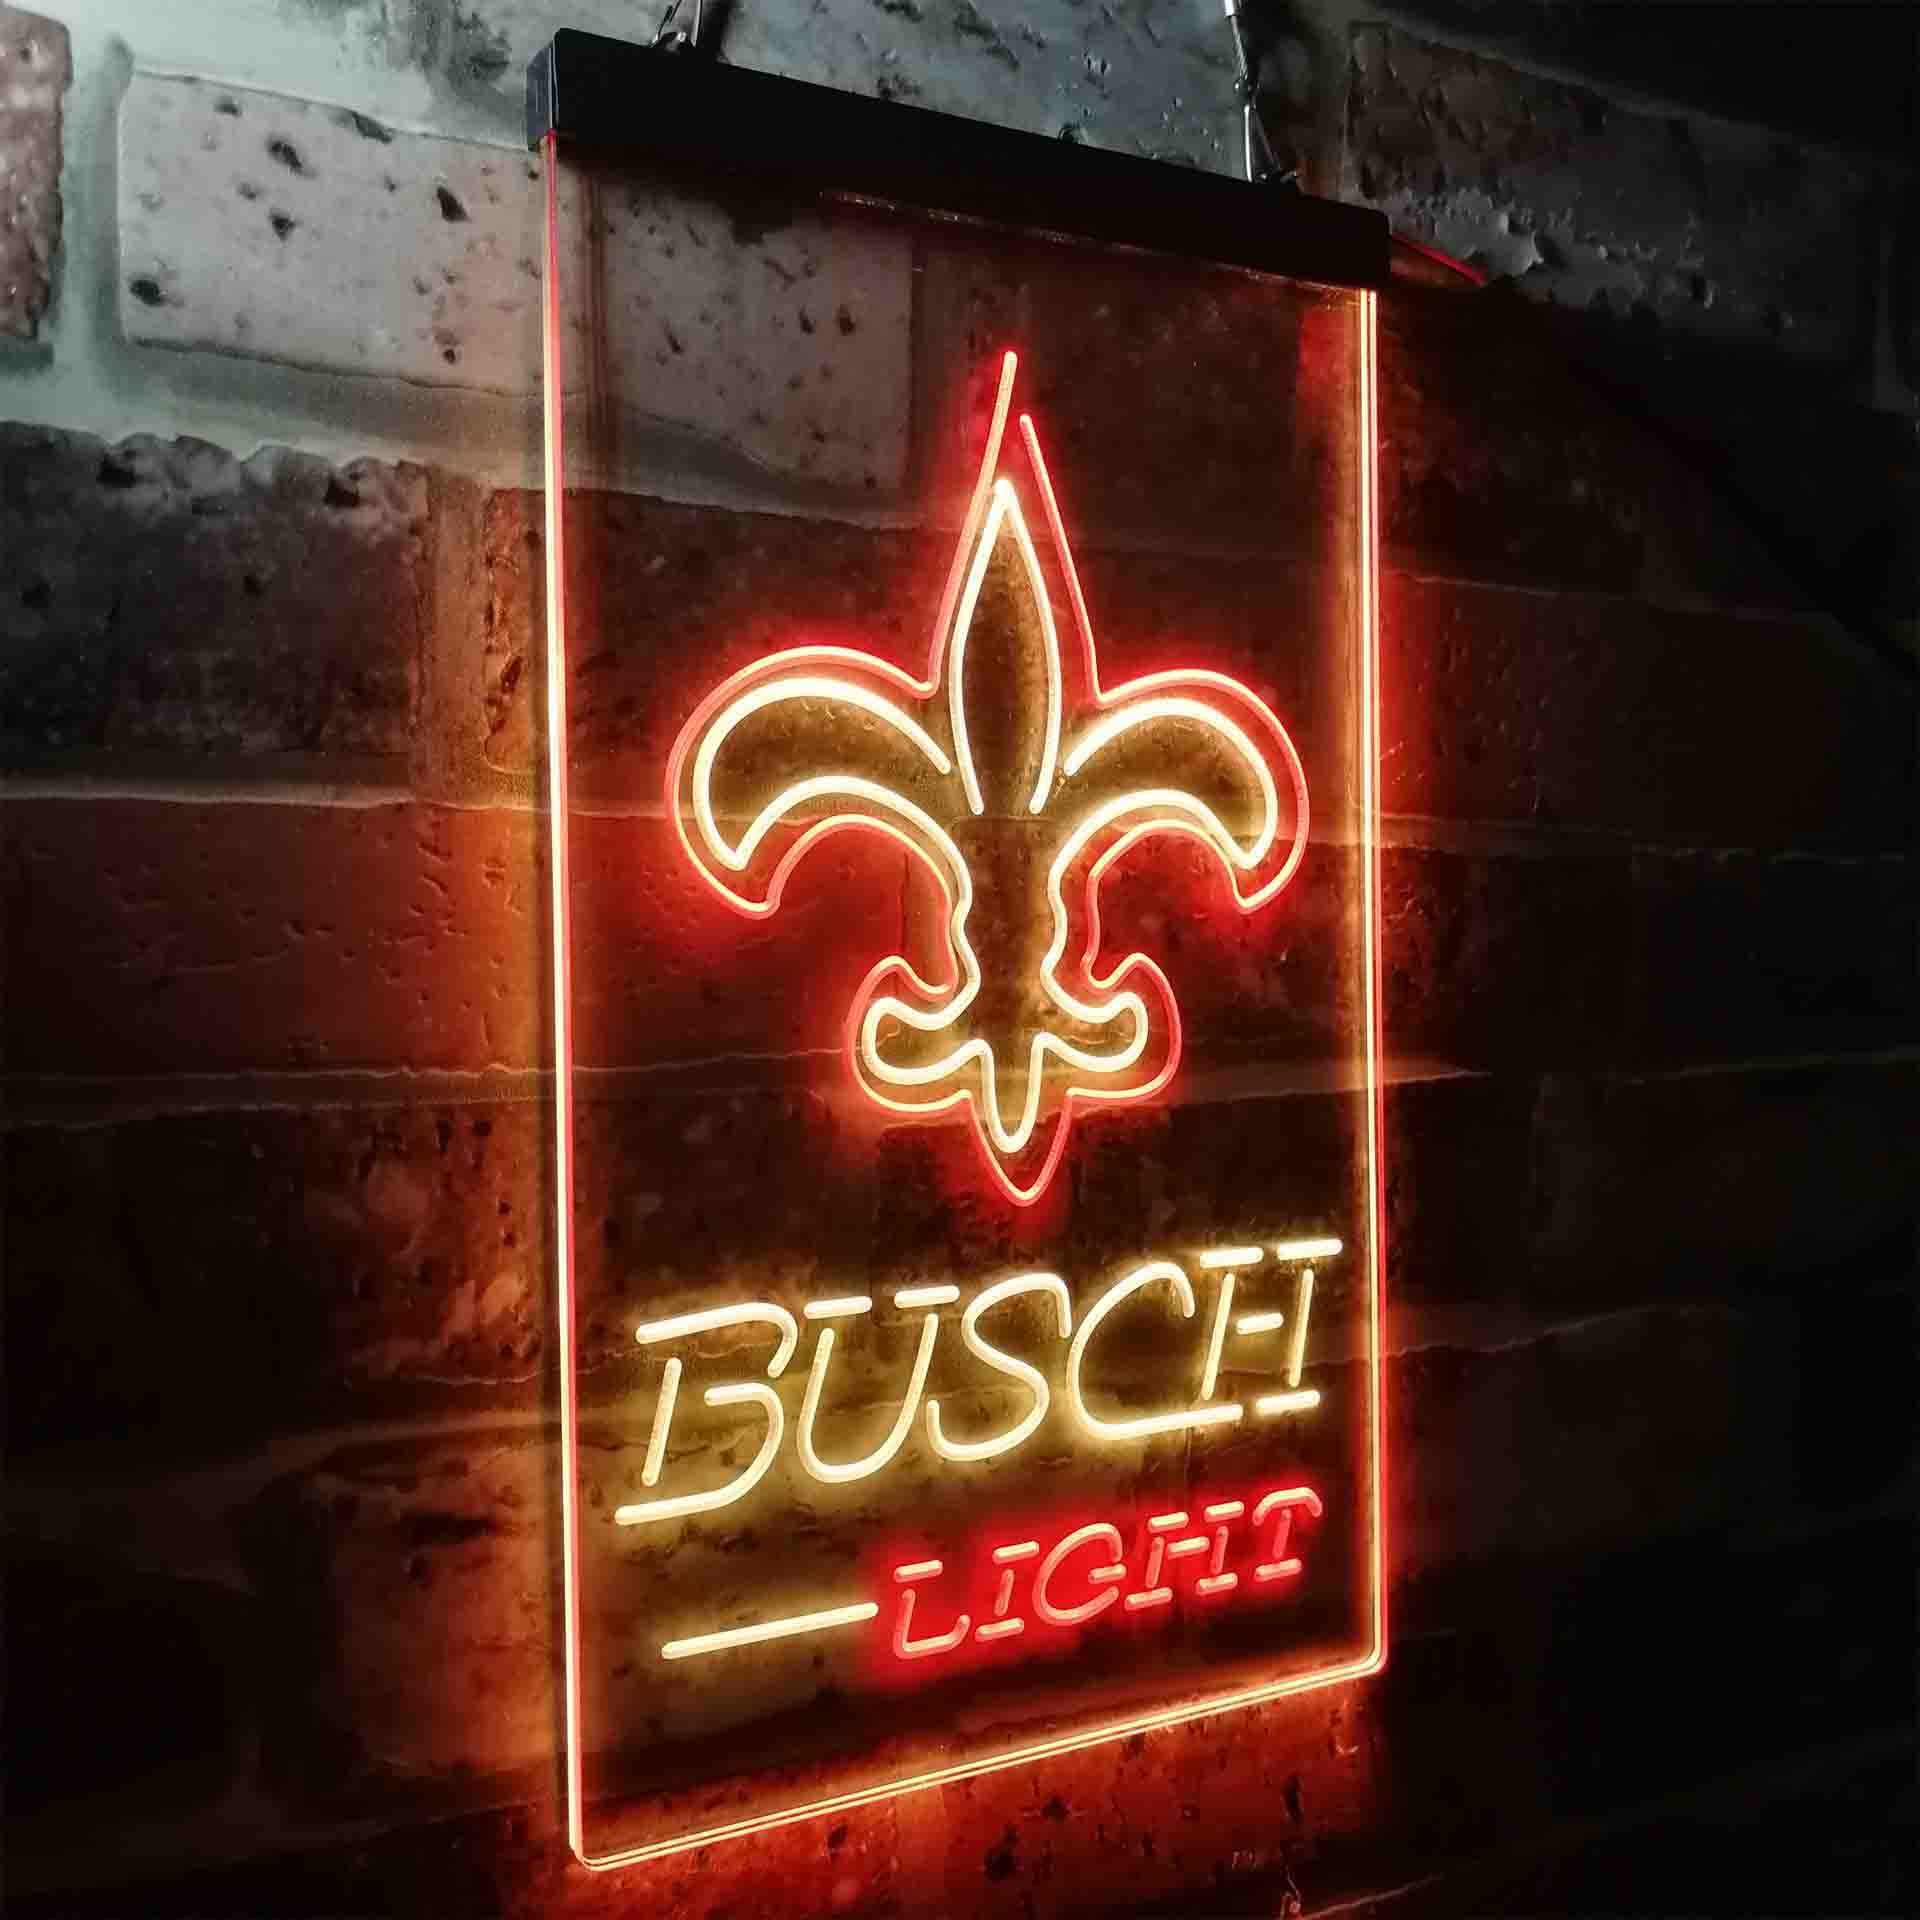 New Orleans Saints Busch Light LED Neon Sign